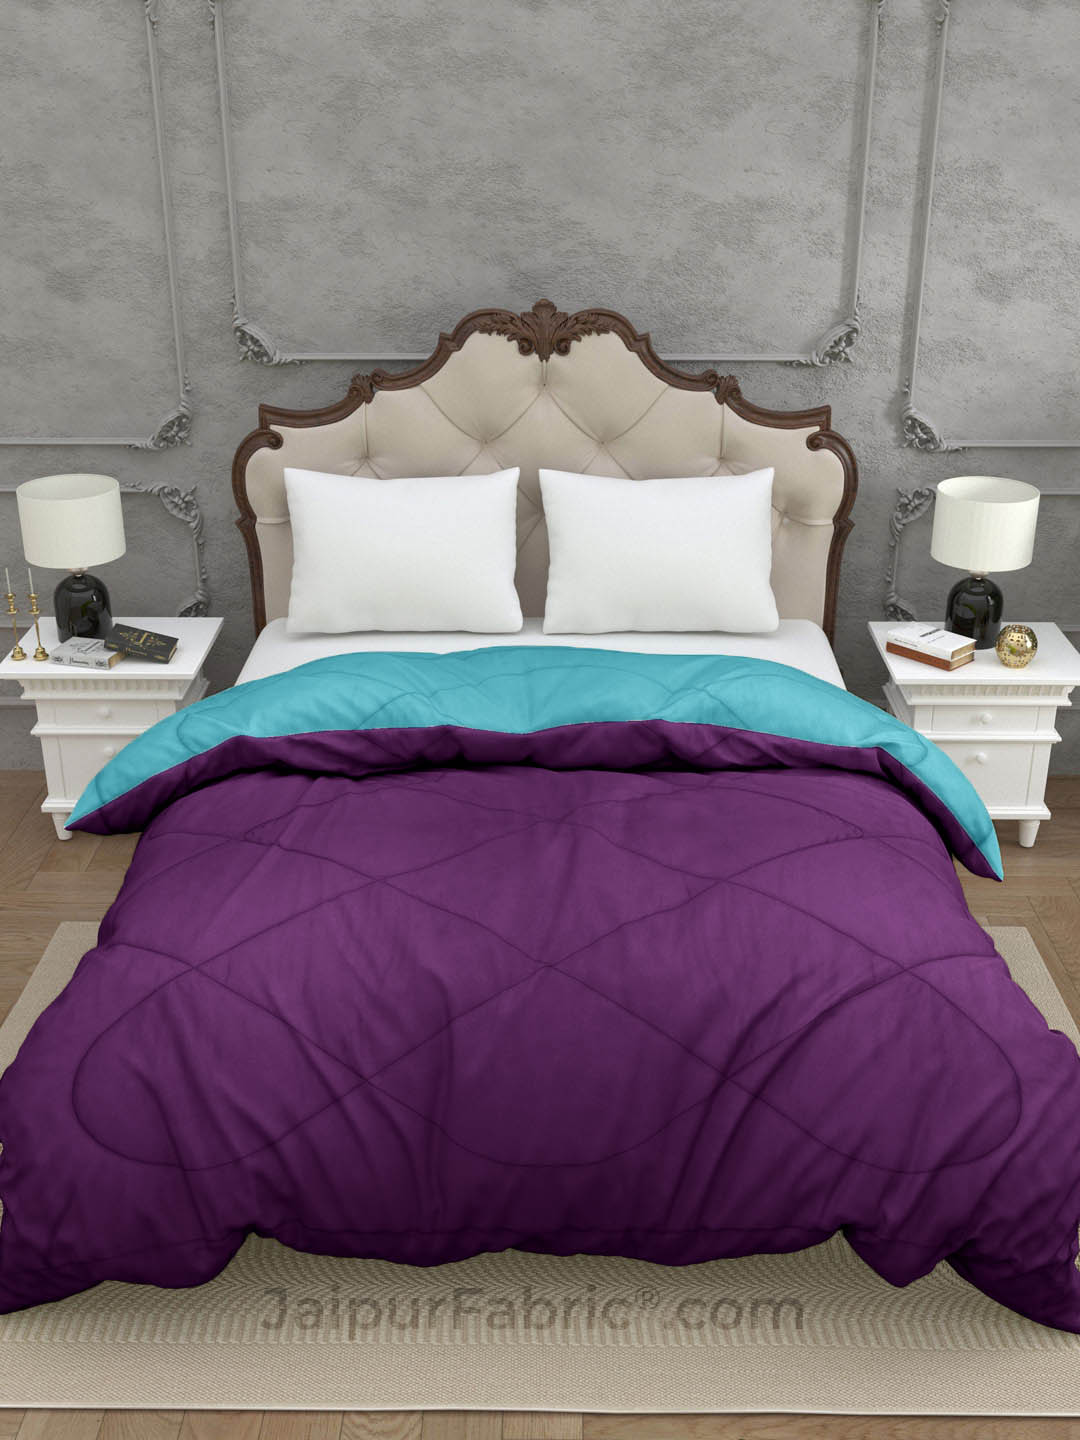 Purlpe Ocean Blue Double Bed Comforter